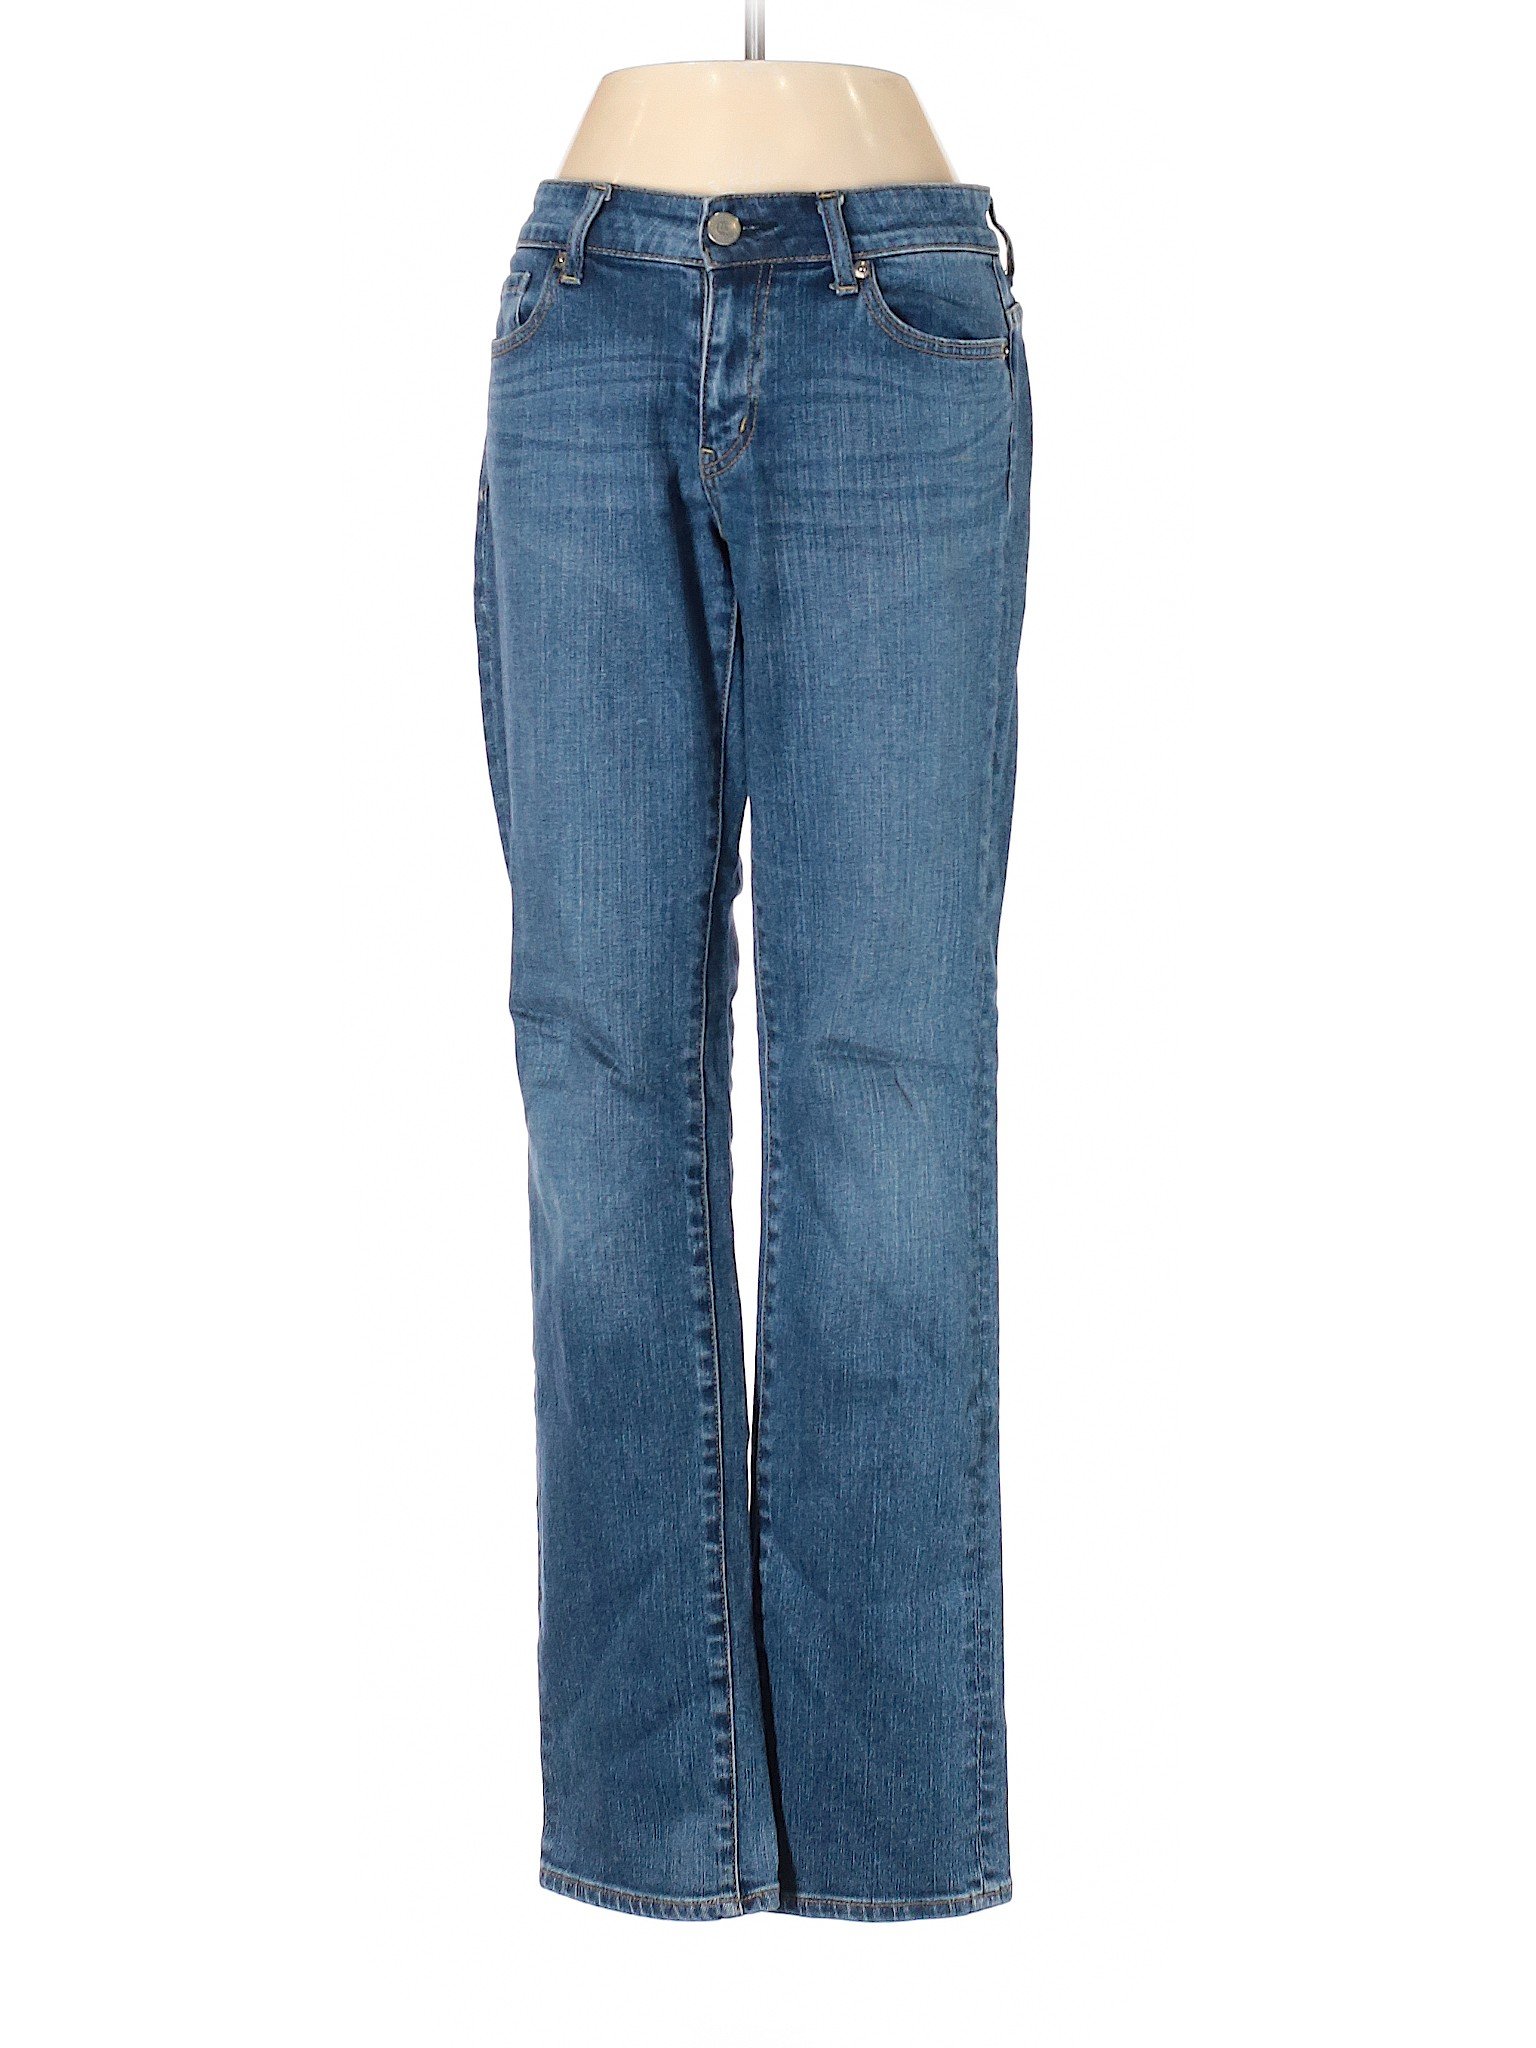 Uniqlo Women Blue Jeans 27W | eBay